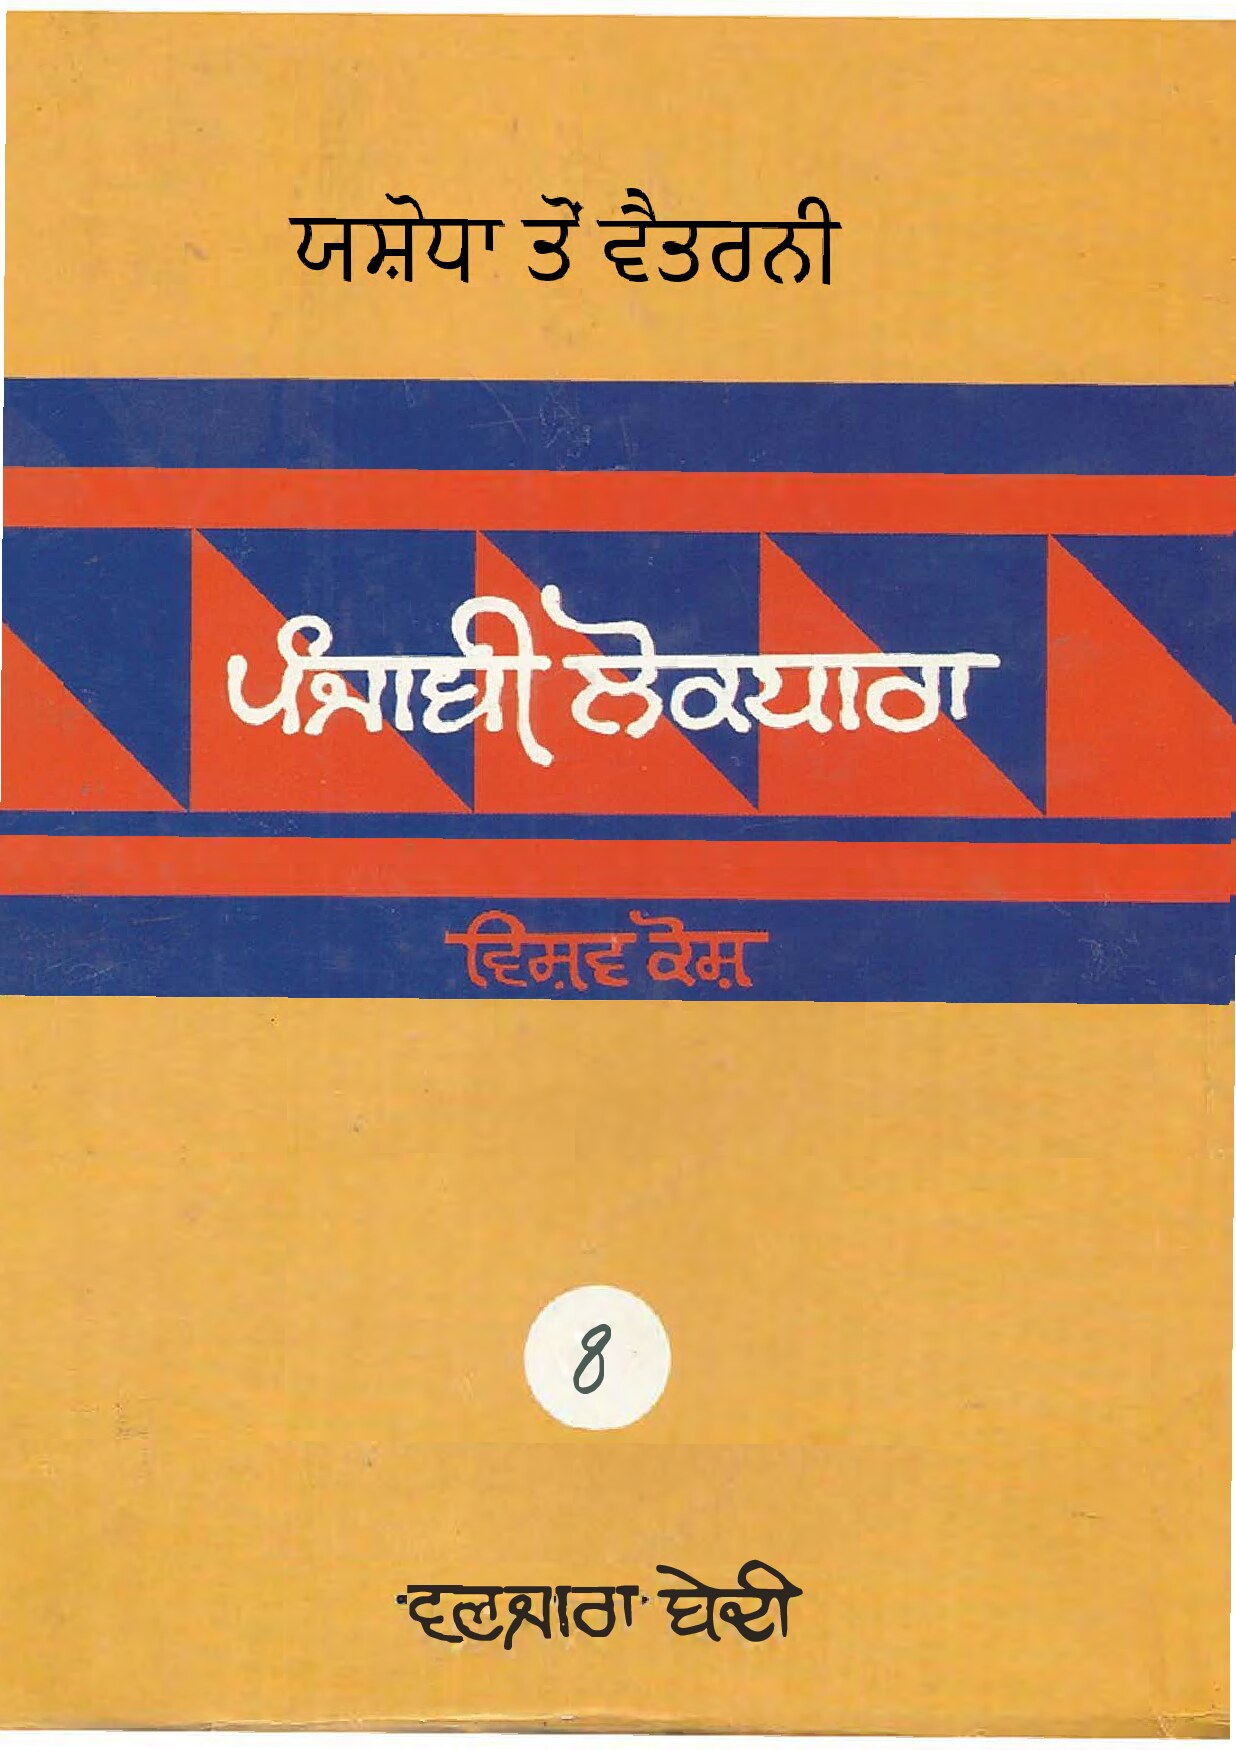 ਪੰਜਾਬੀ ਲੋਕ ਧਾਰਾ - ਵਿਸ਼ਵ ਕੋਸ਼(8) - Punjabi Lok Dhara - Vishav Kosh(8)